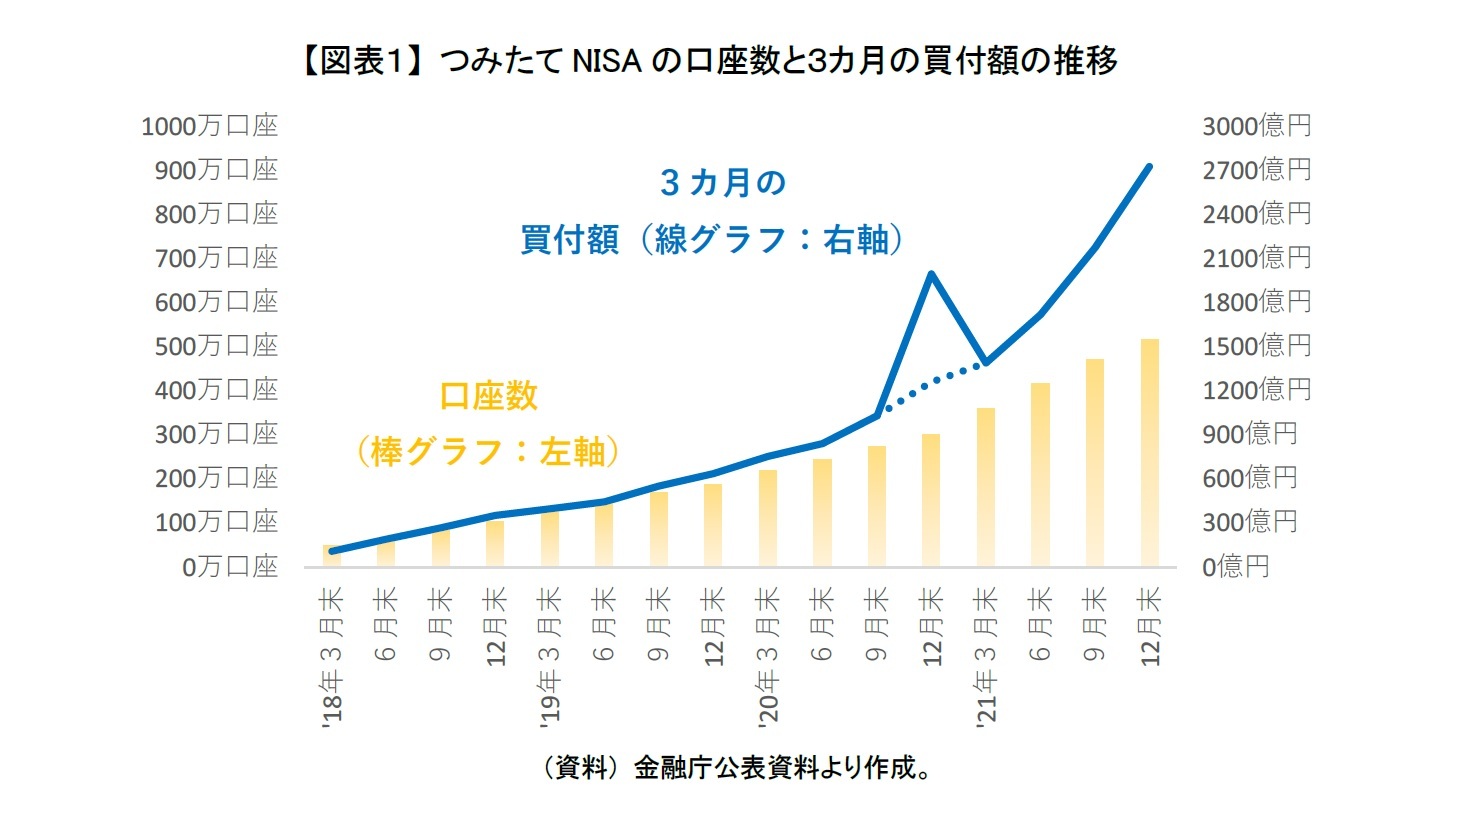 つみたてNISAの口座数の推移：ニッセイ基礎研究所